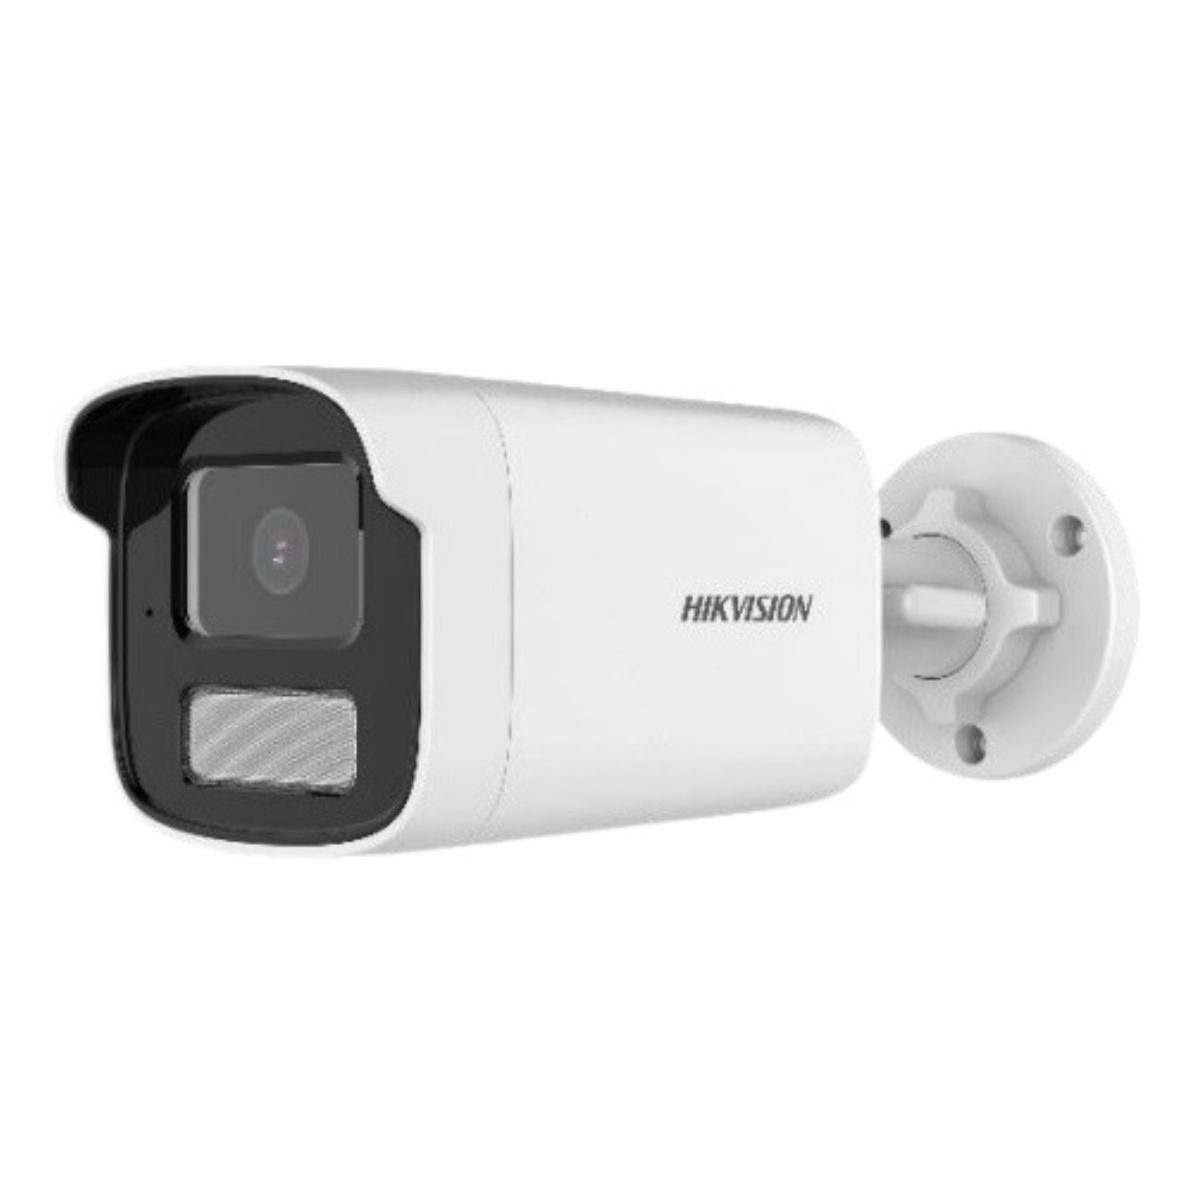 Camera thân hồng ngoại 50m Hikvision DS-2CD1T41G2-LIU 4MP, tích hợp mic, cảnh báo chuyển động